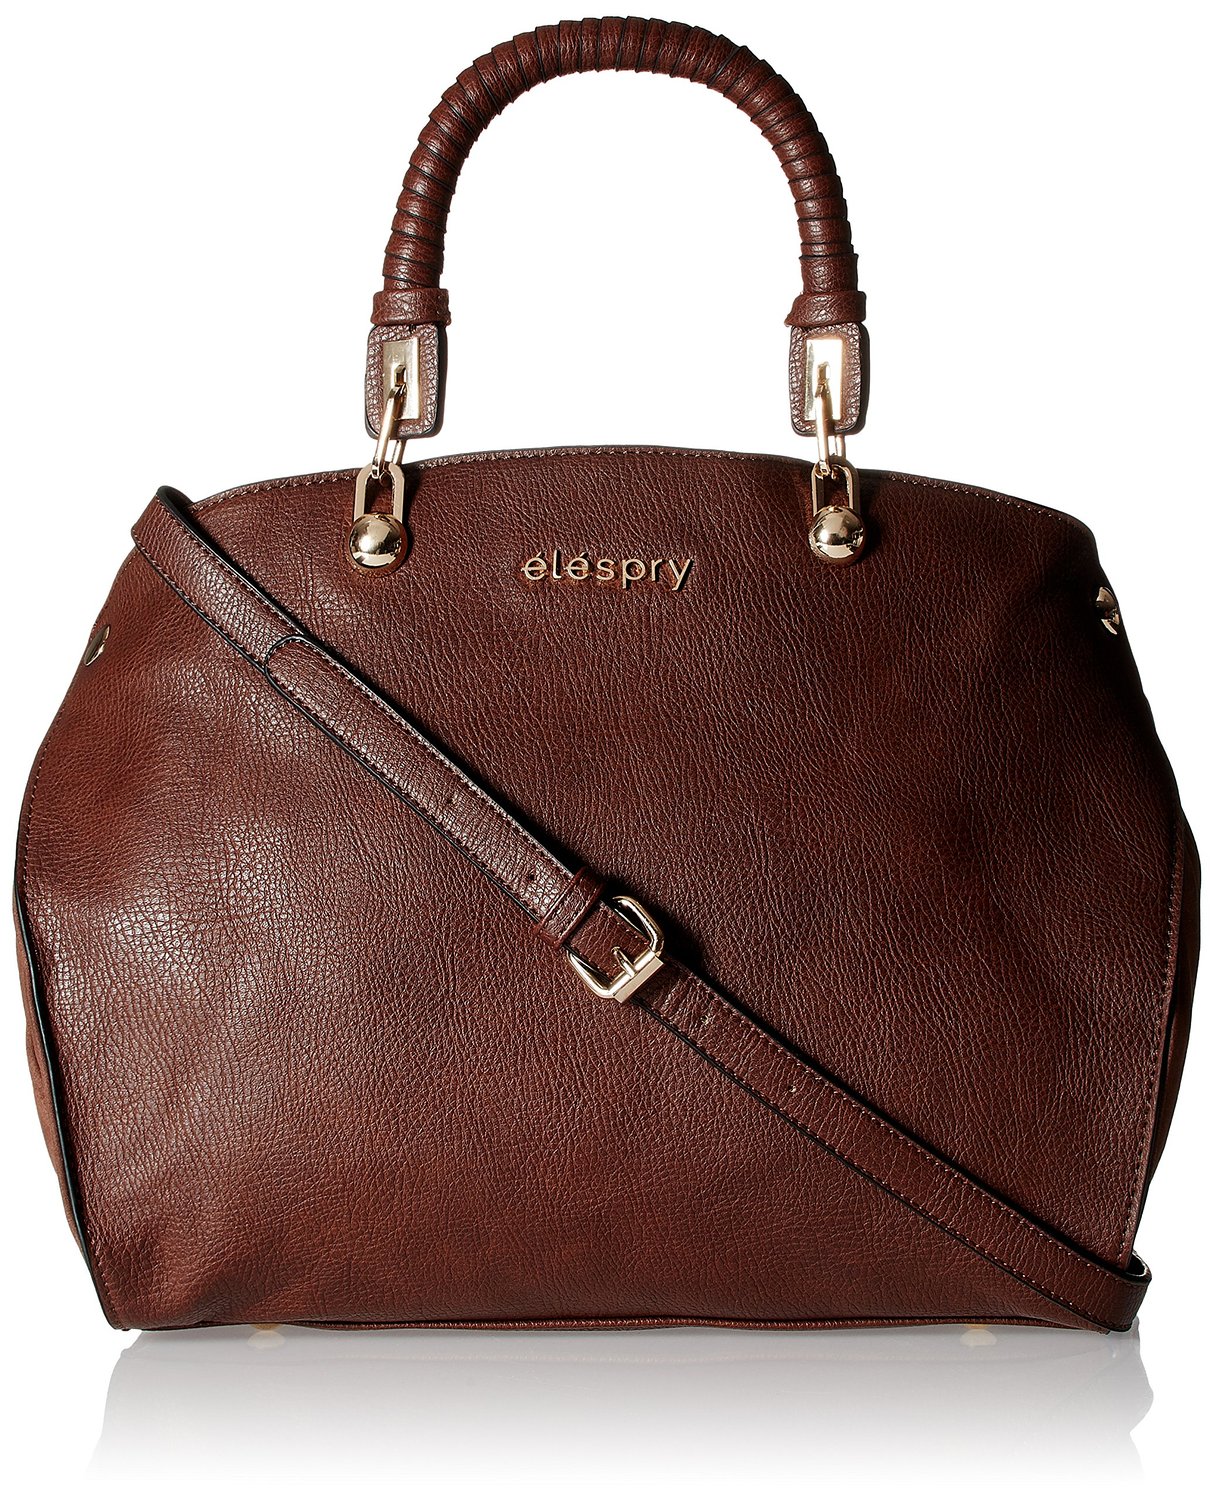 elespry womens handbag